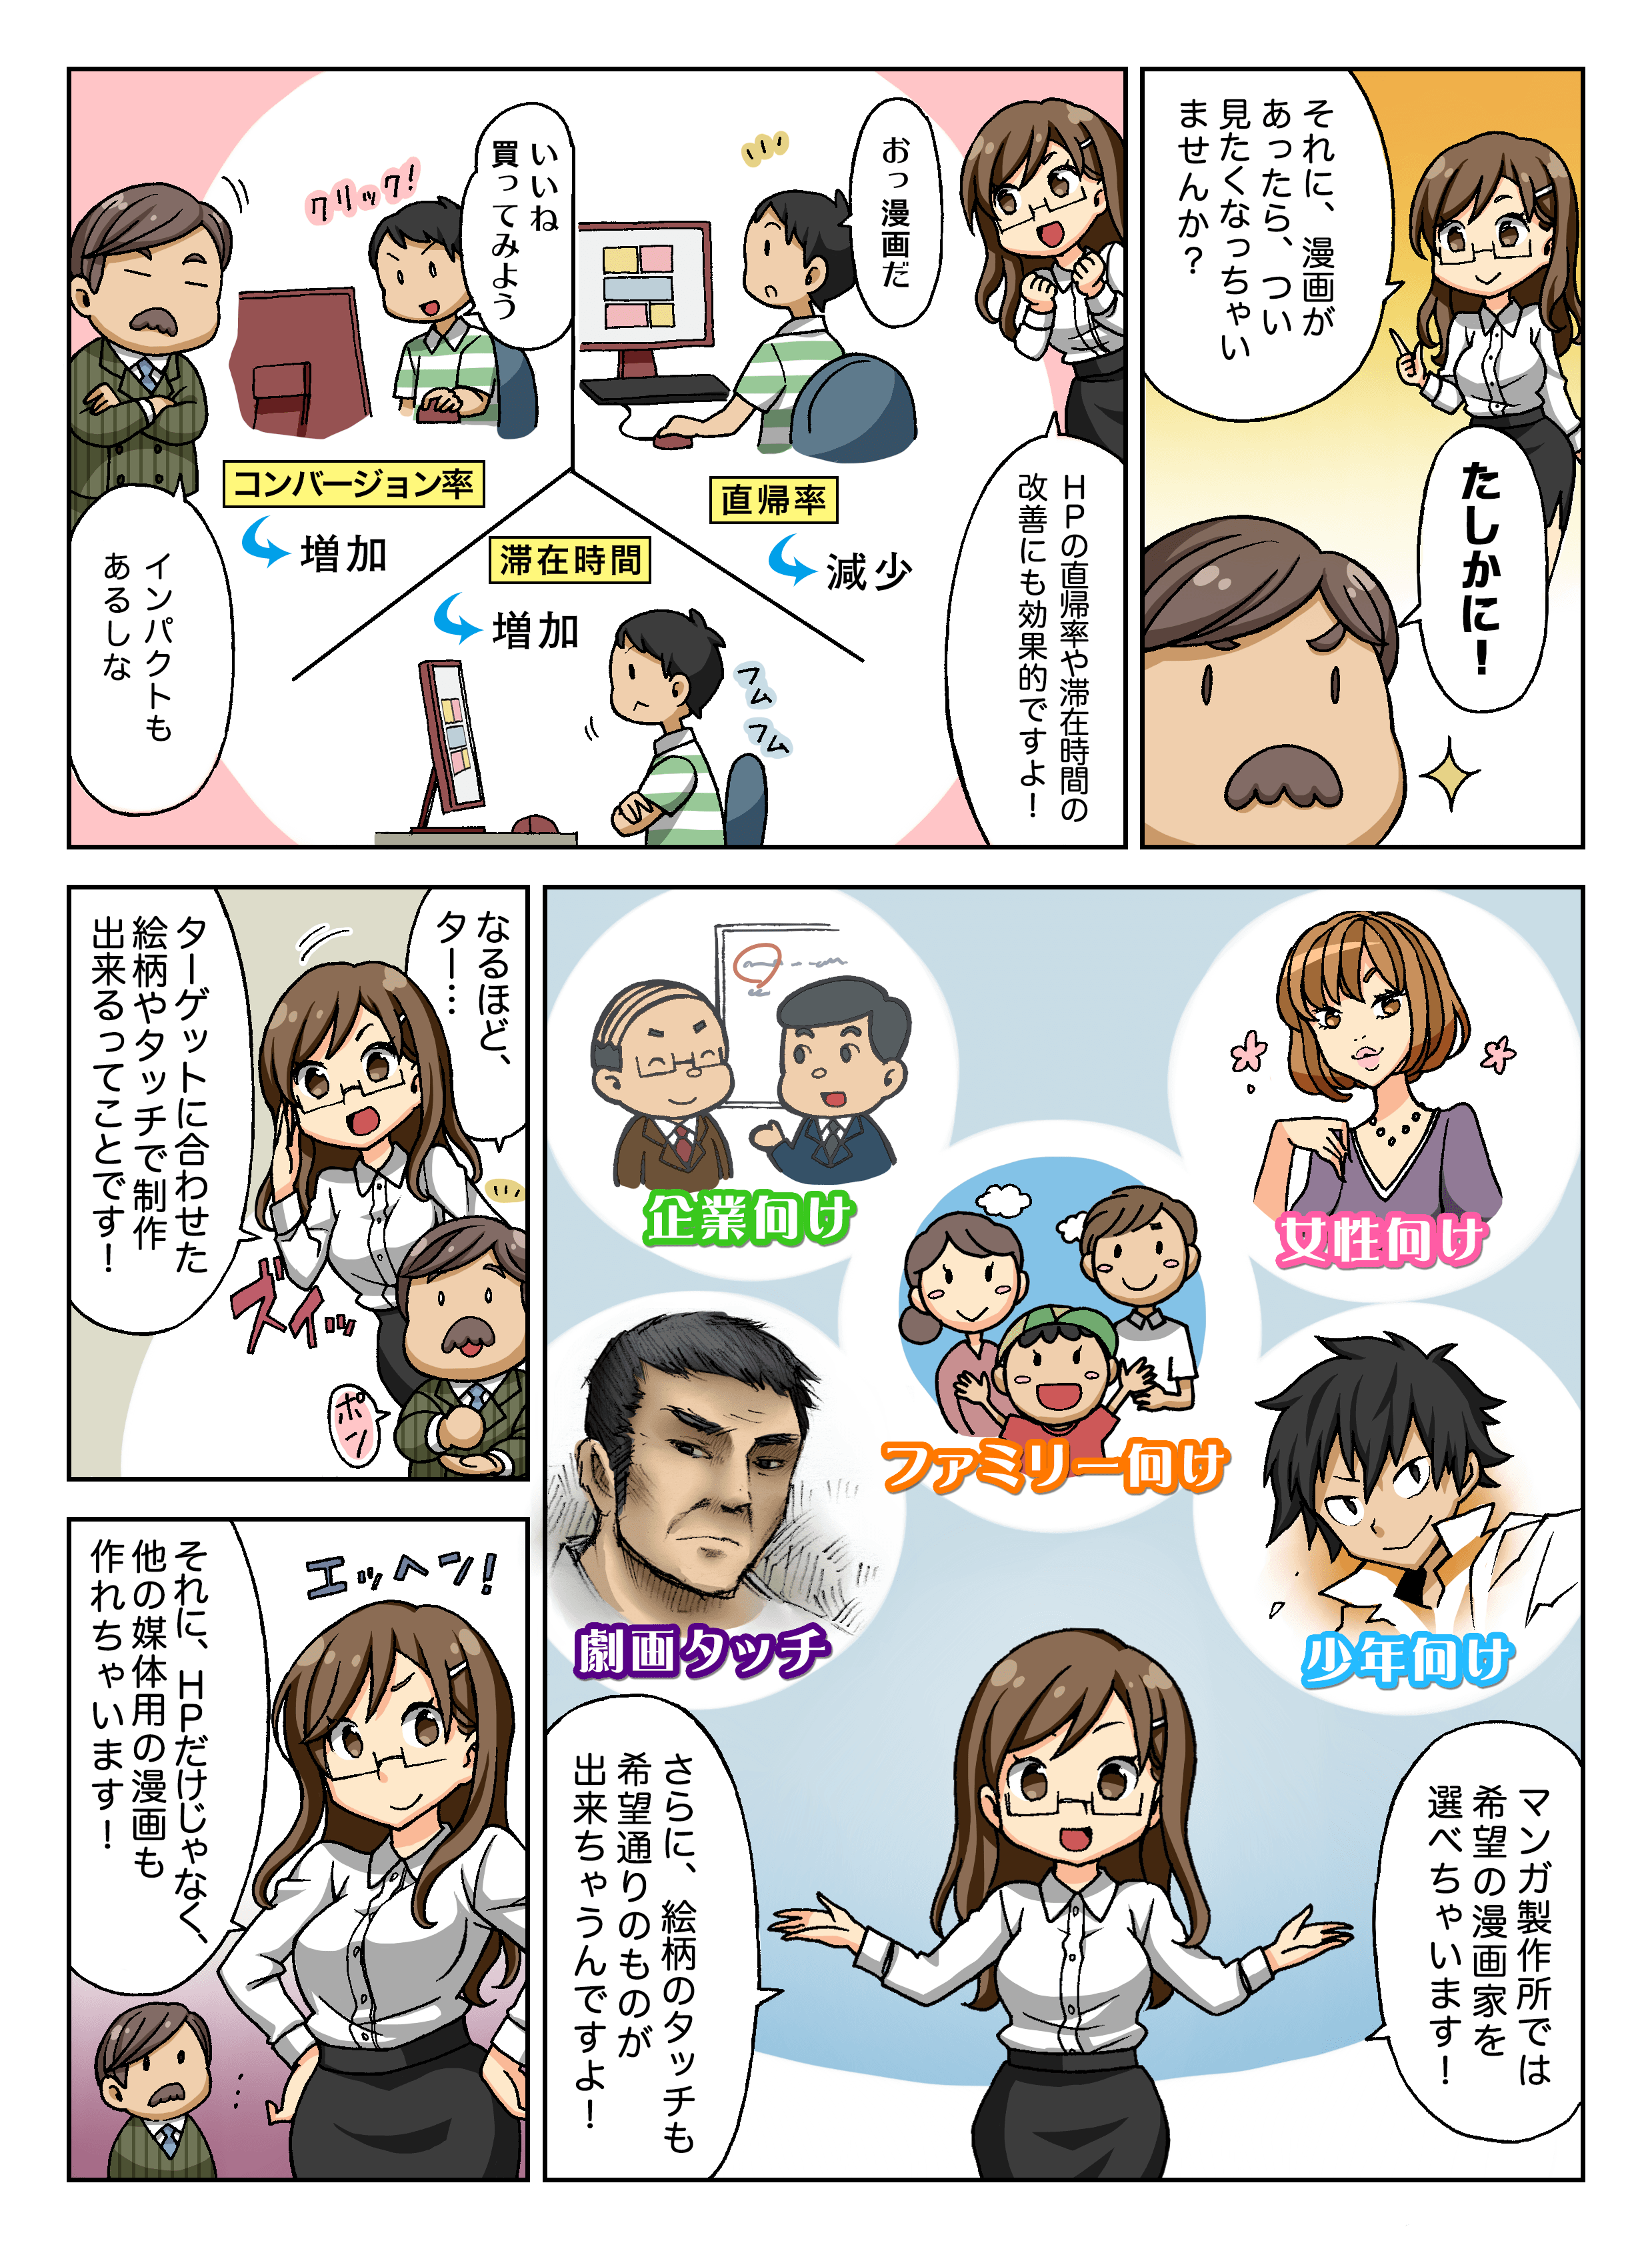 紹介漫画02 企業向け漫画